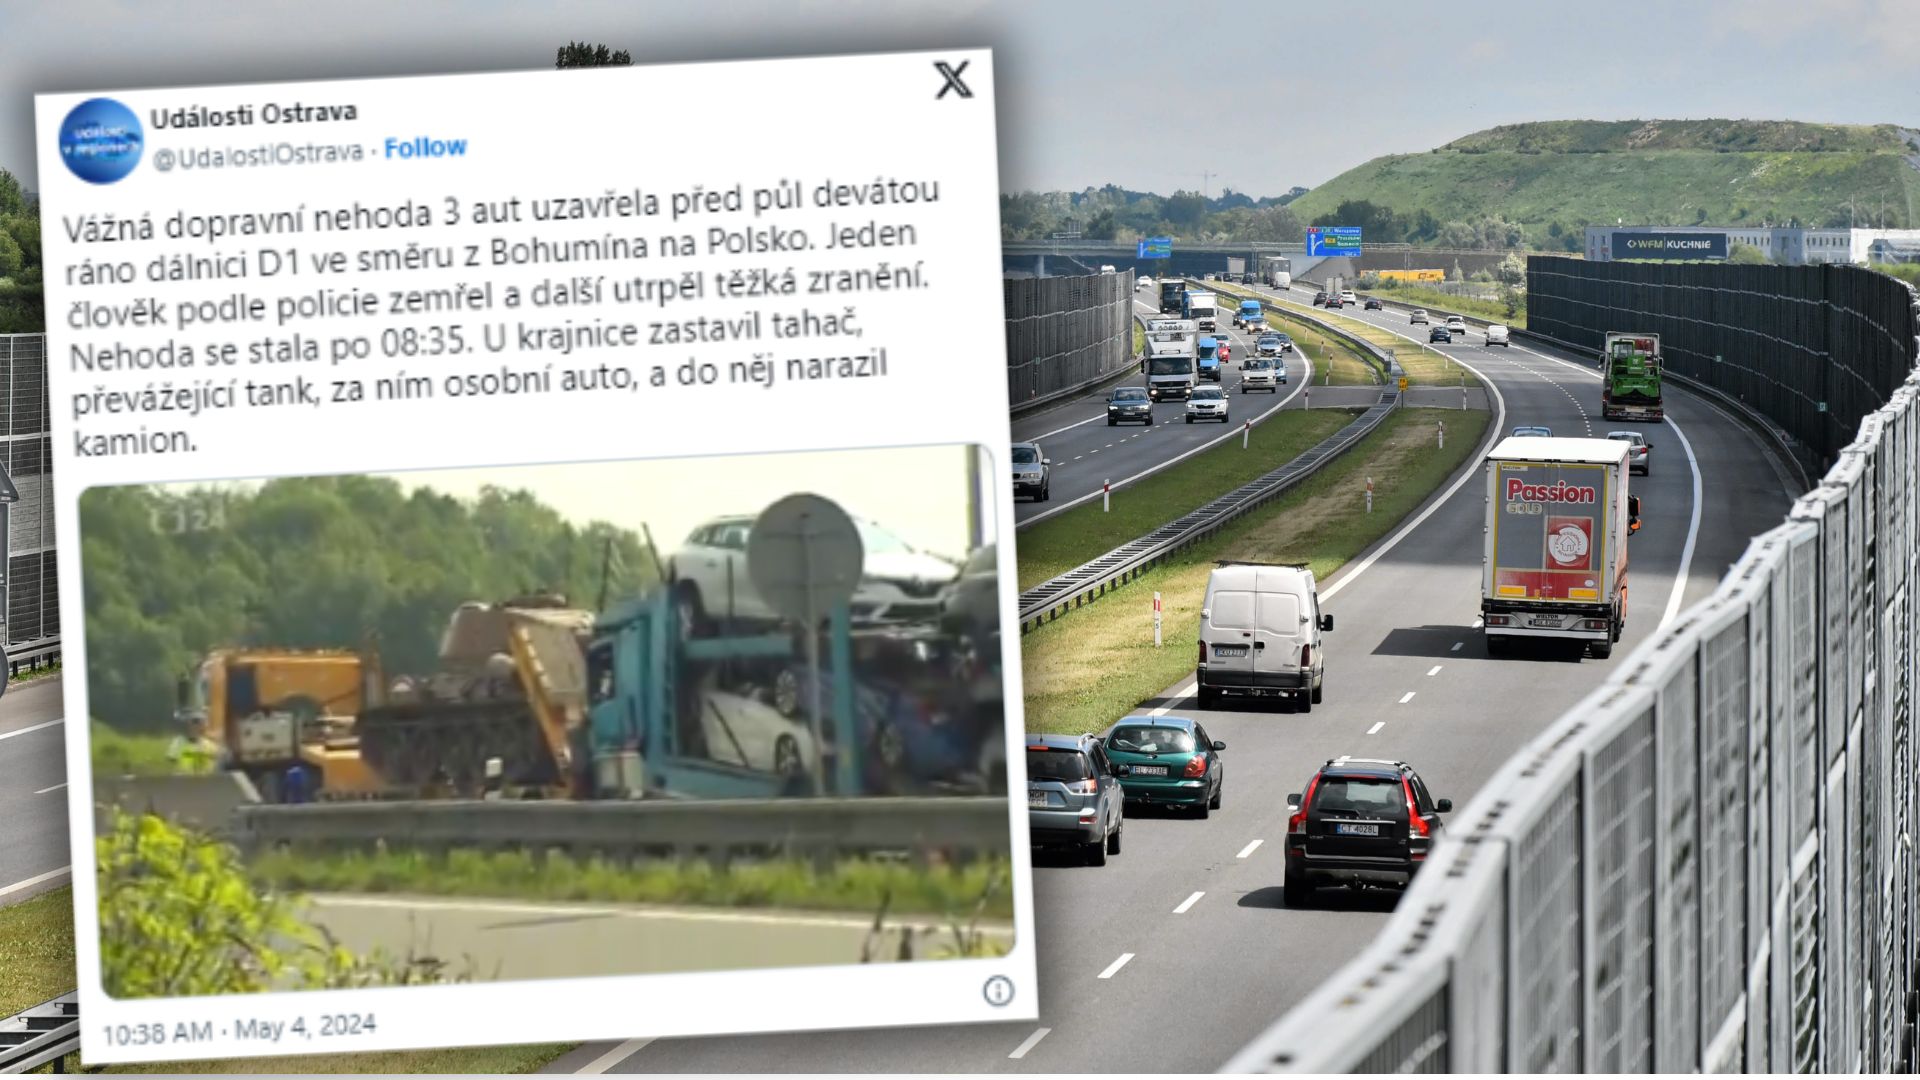 tragiczny wypadek z udziałem czołgu przy granicy polski. nie żyje jedna osoba. autostrada zablokowana [wideo]